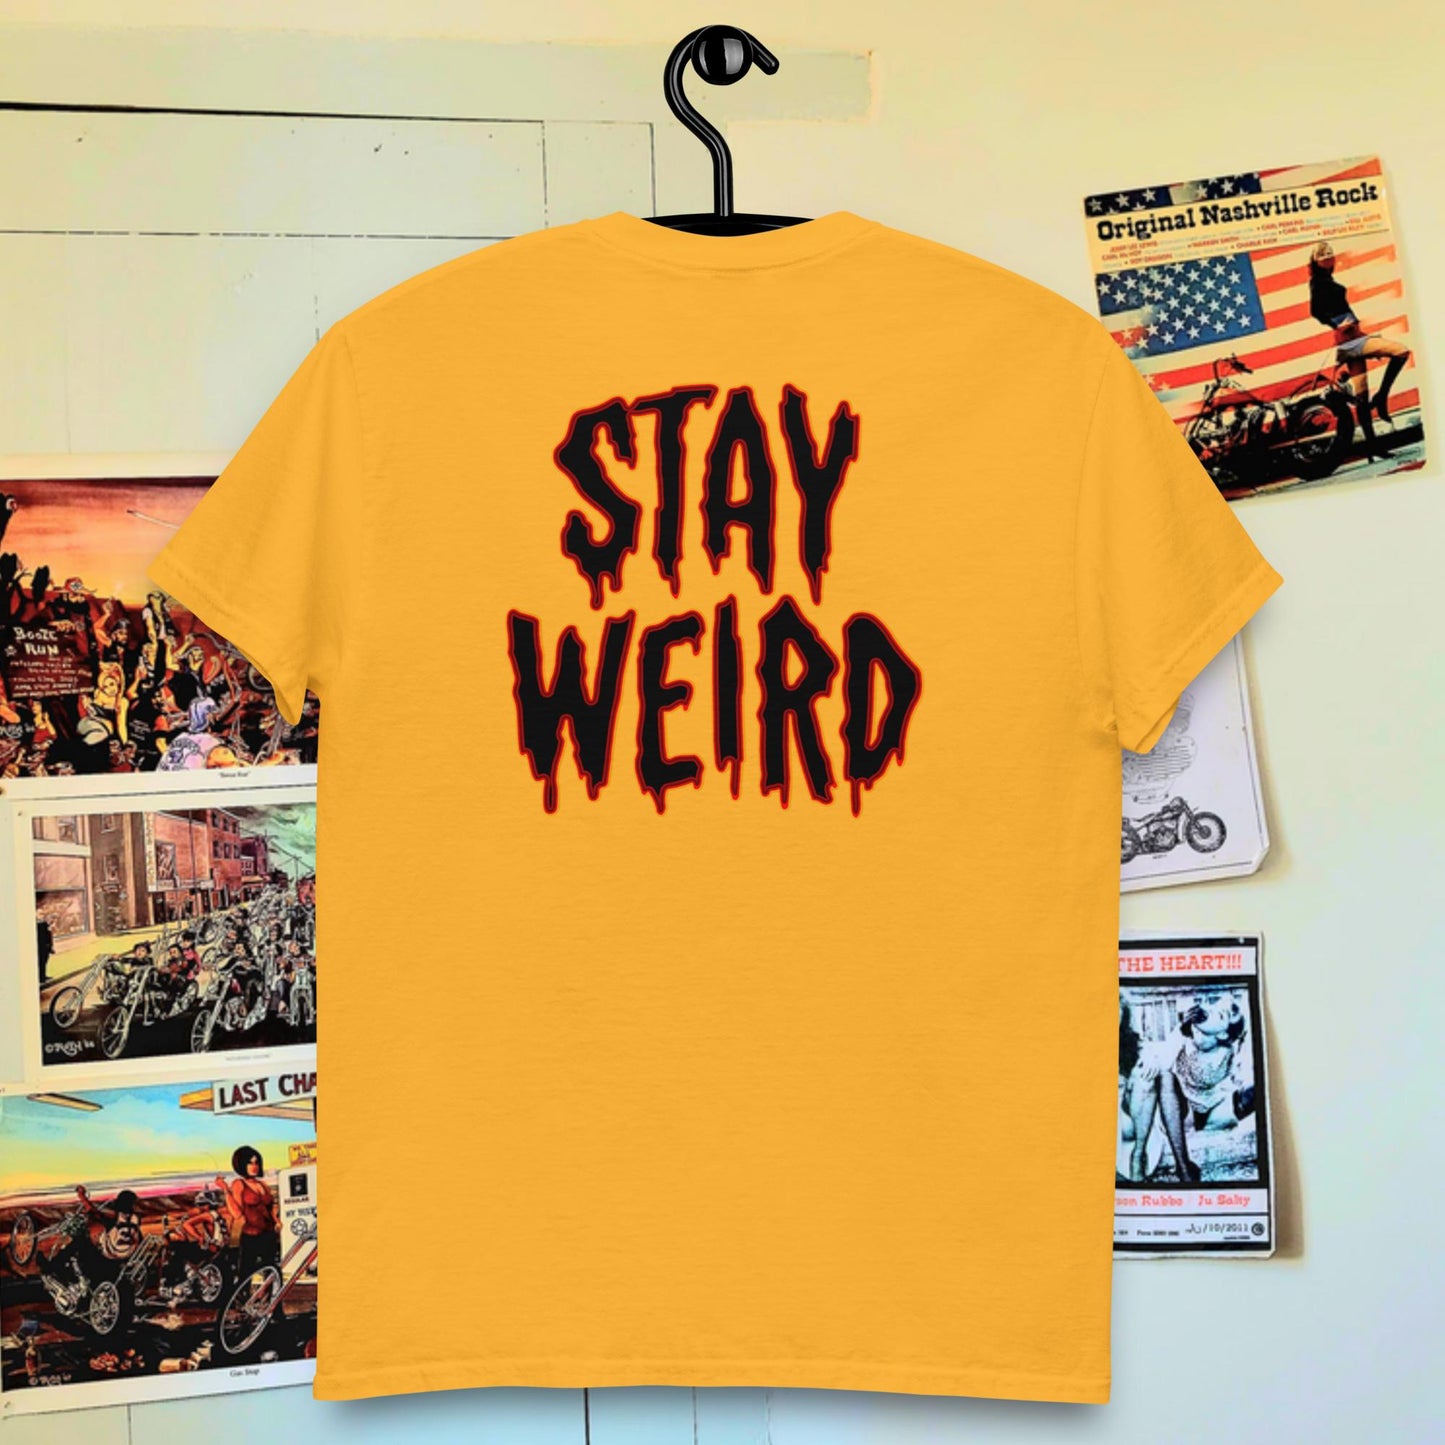 Stay weird!!